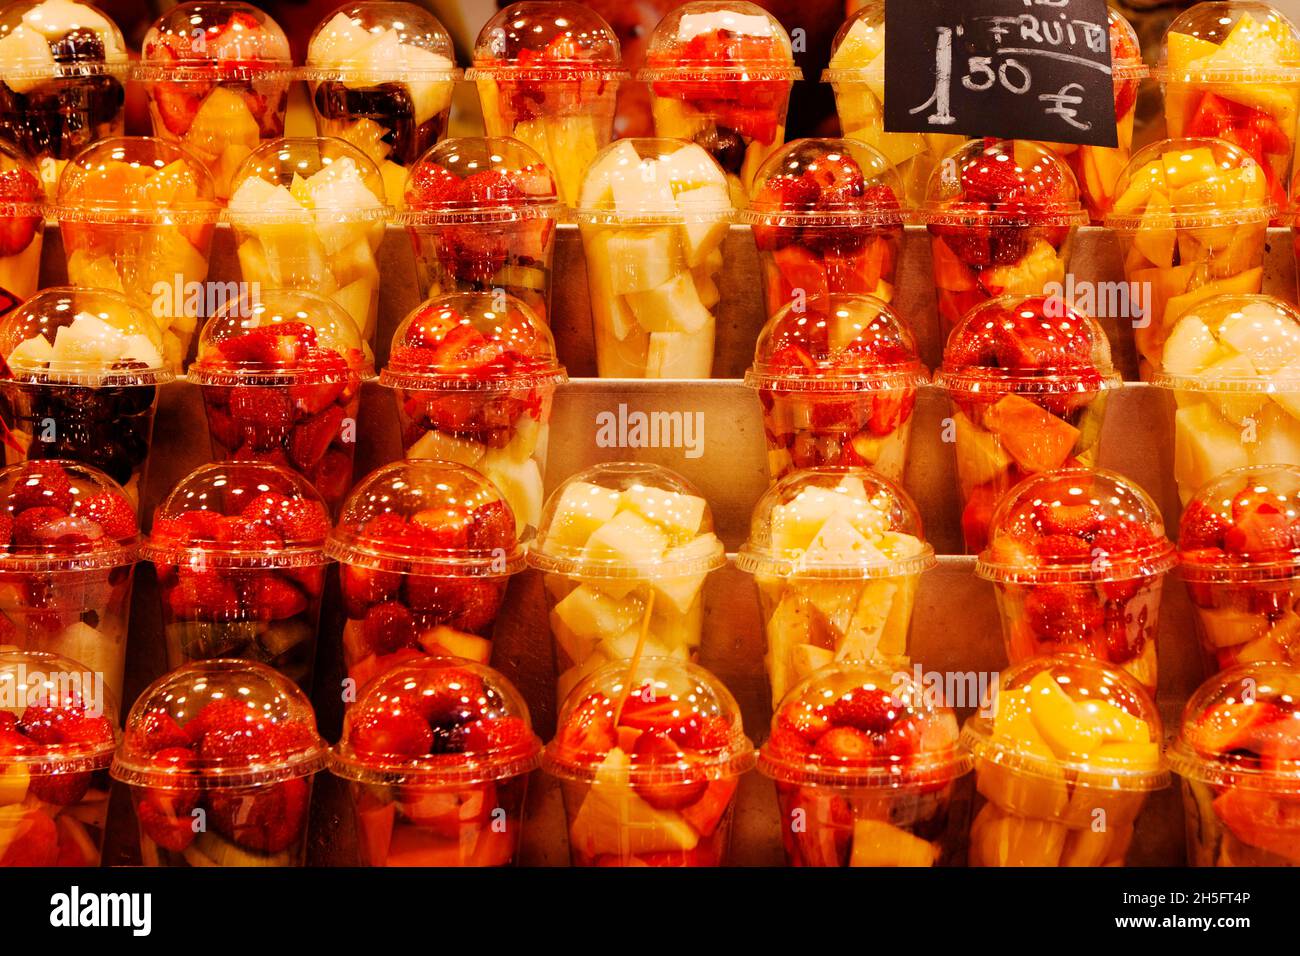 Obst (Erdbeeren, Ananas, Äpfel und Brombeeren) in kleinen Stücken, mundgerecht, abgefüllt in Plastikbecher To Go, auf einem Markt in Barcelona. Stock Photo